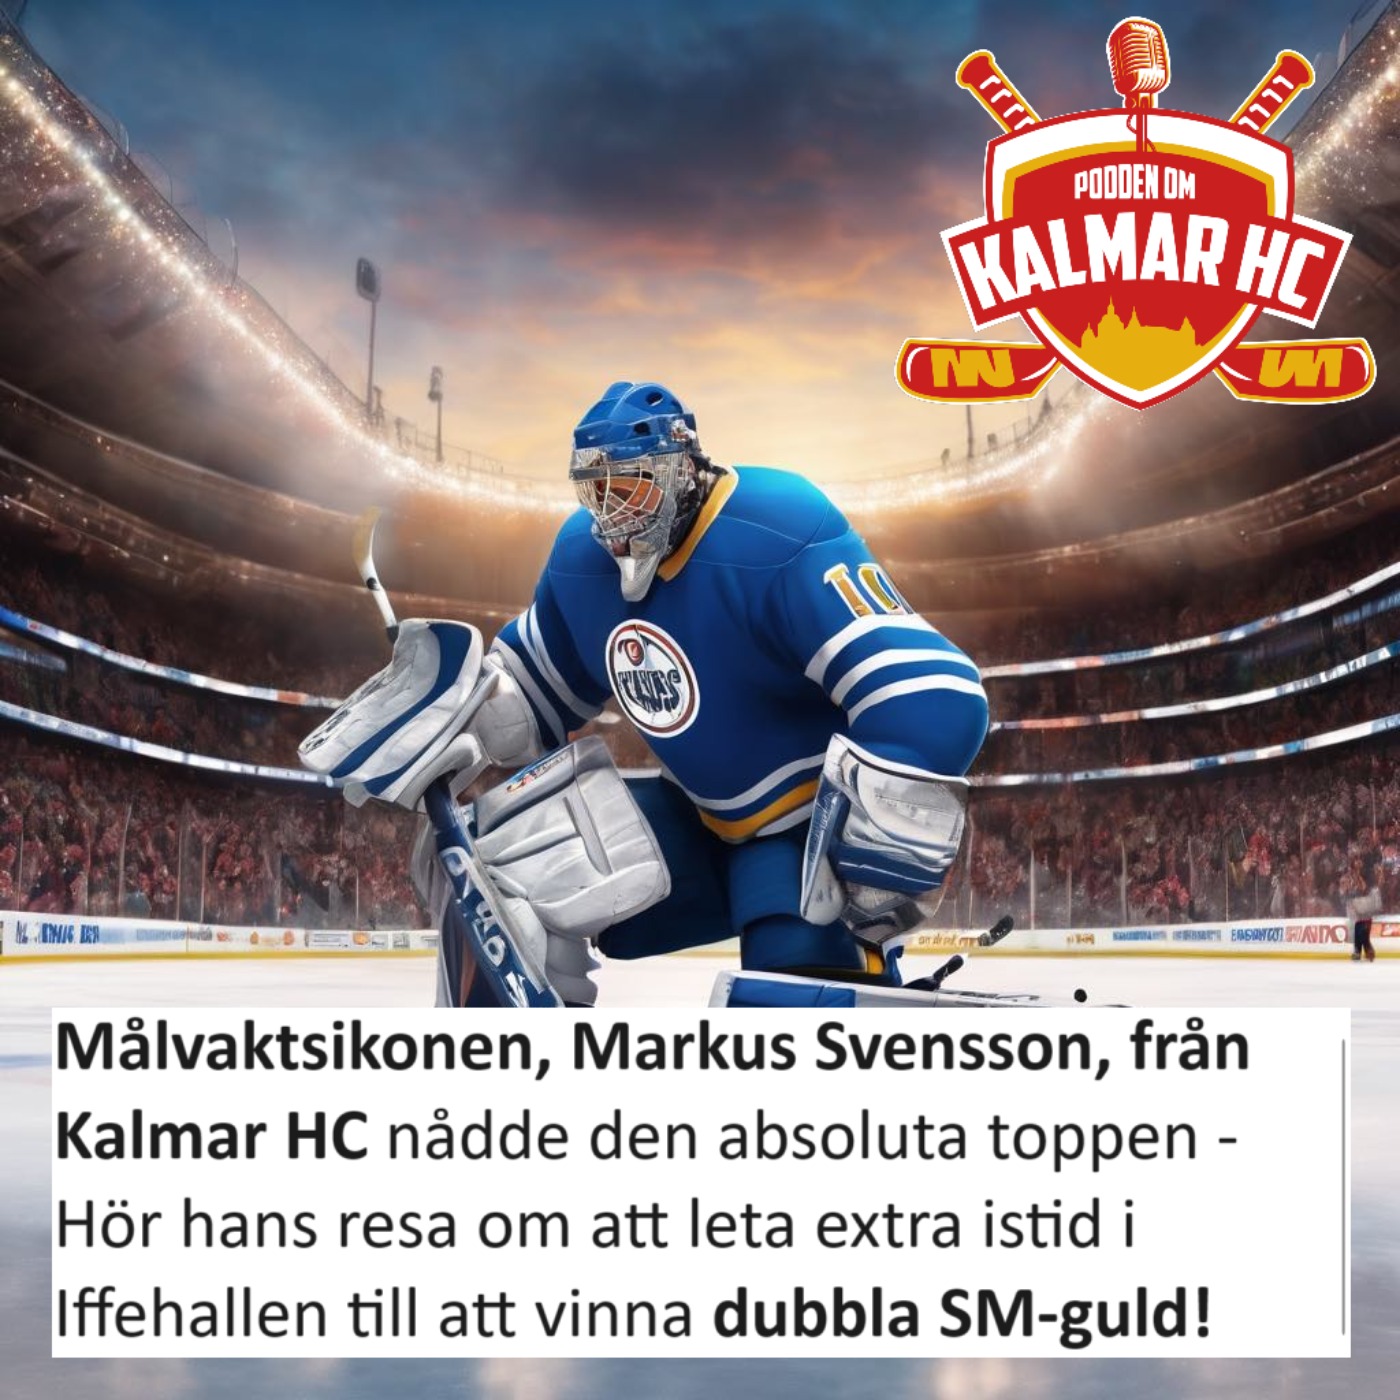 cover art for Målvaktsikonen, Markus Svensson, från Kalmar HC nådde den absoluta toppen - Hör hans resa om att leta extra istid i Iffehallen till att vinna dubbla SM-guld!